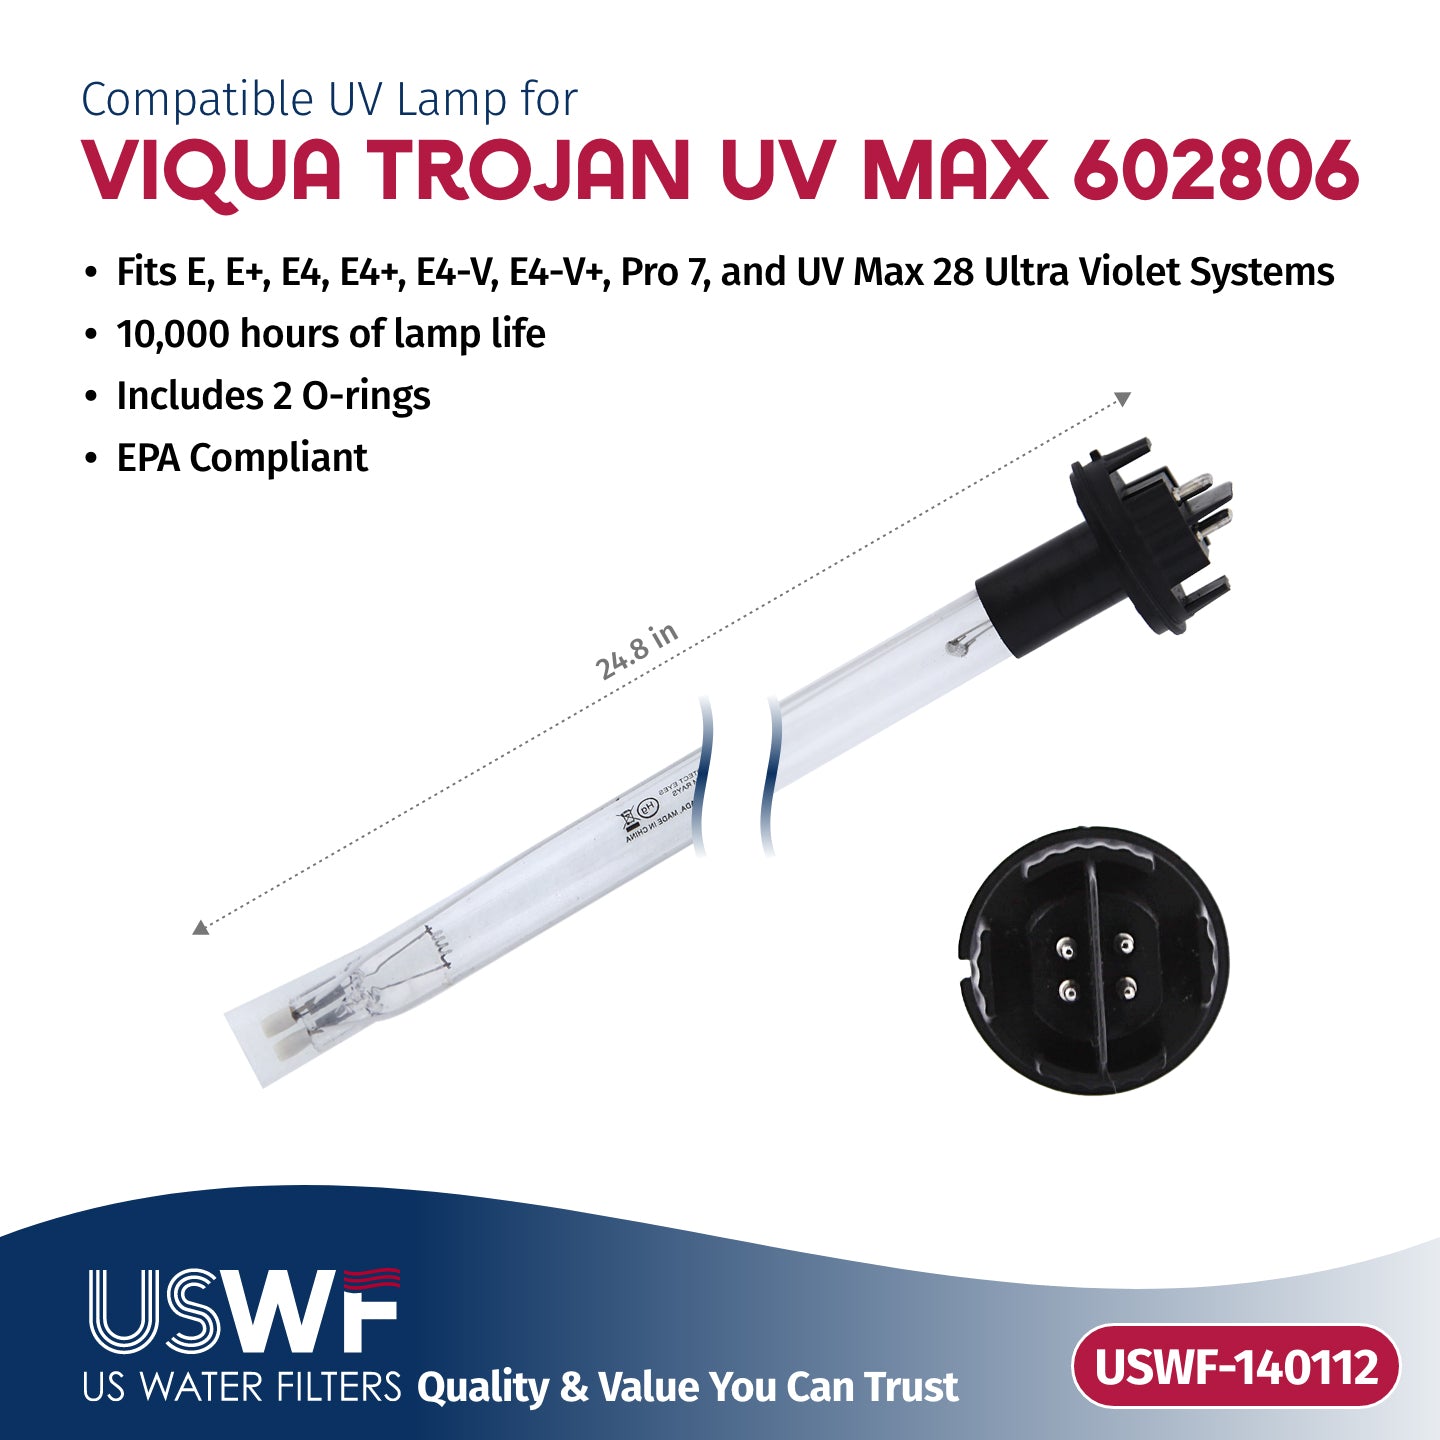 USWF Replacement for 602806 UV Lamp | Fits the VIQUA E/E+/E4/E4+/E4-V, Pro 7, & UVMax 28 Series UV Systems